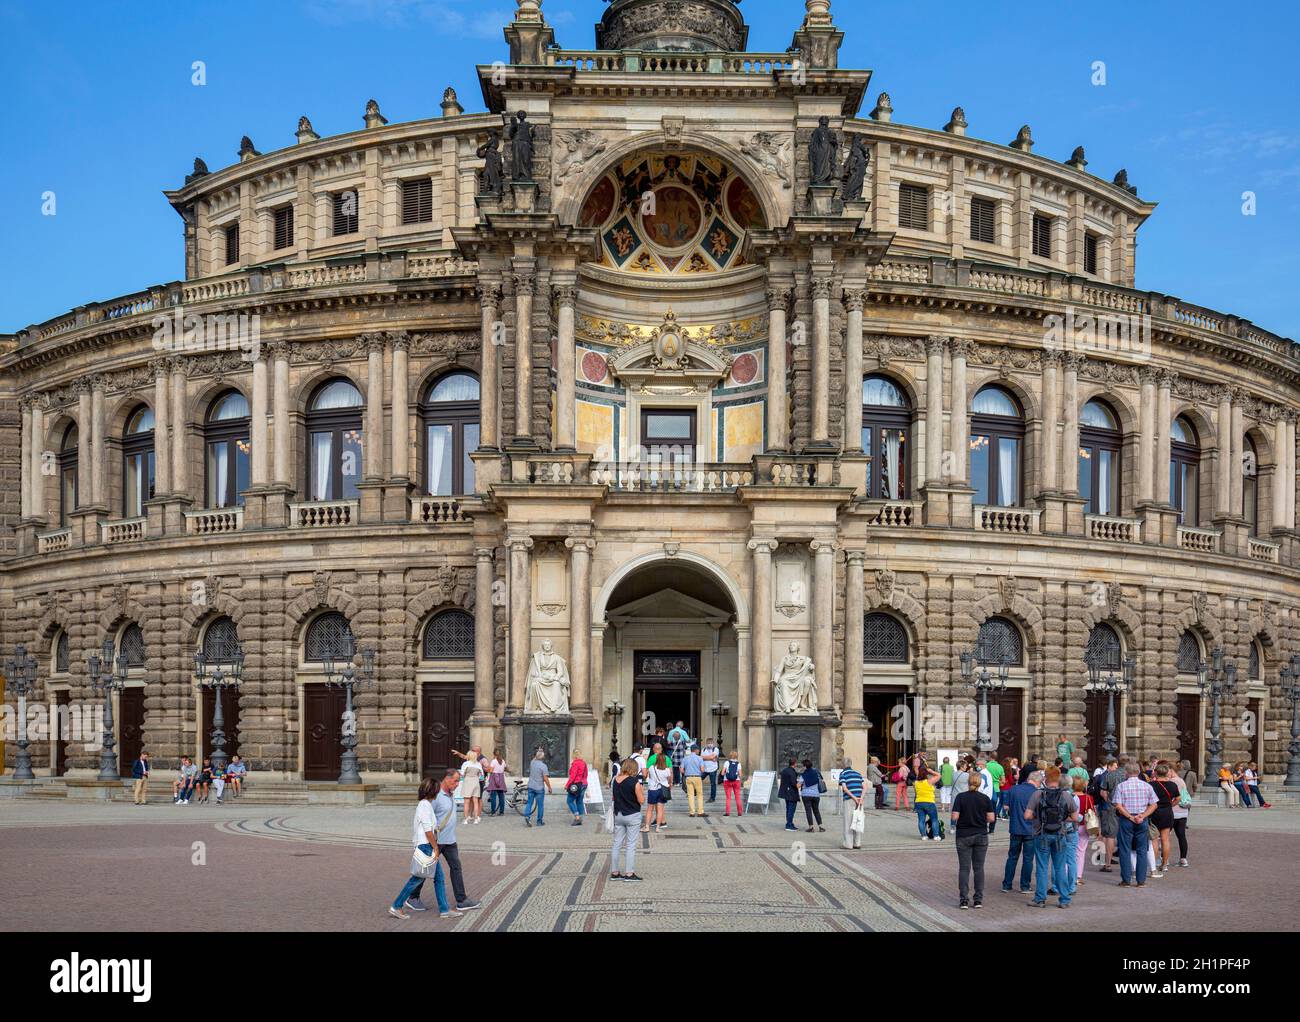 Dresden, Alemania - 23 de septiembre de 2020 : Semperoper, famosa ópera. El edificio está situado en la plaza del Teatro, cerca del río Elba, en el casco histórico Foto de stock